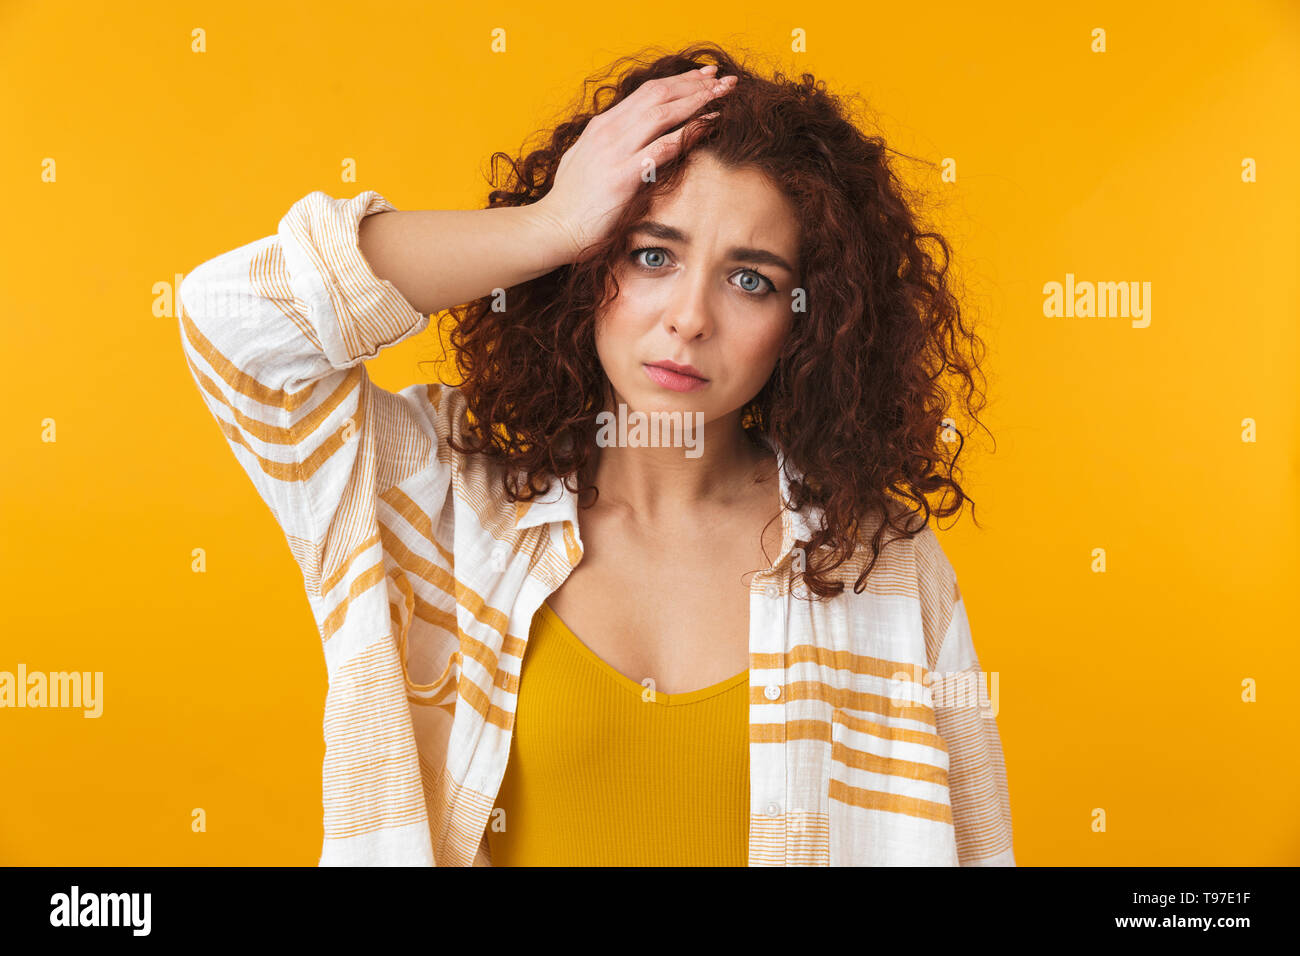 Immagine della donna perplesso 20s con capelli ricci, la afferra per la testa, isolate su sfondo giallo Foto Stock